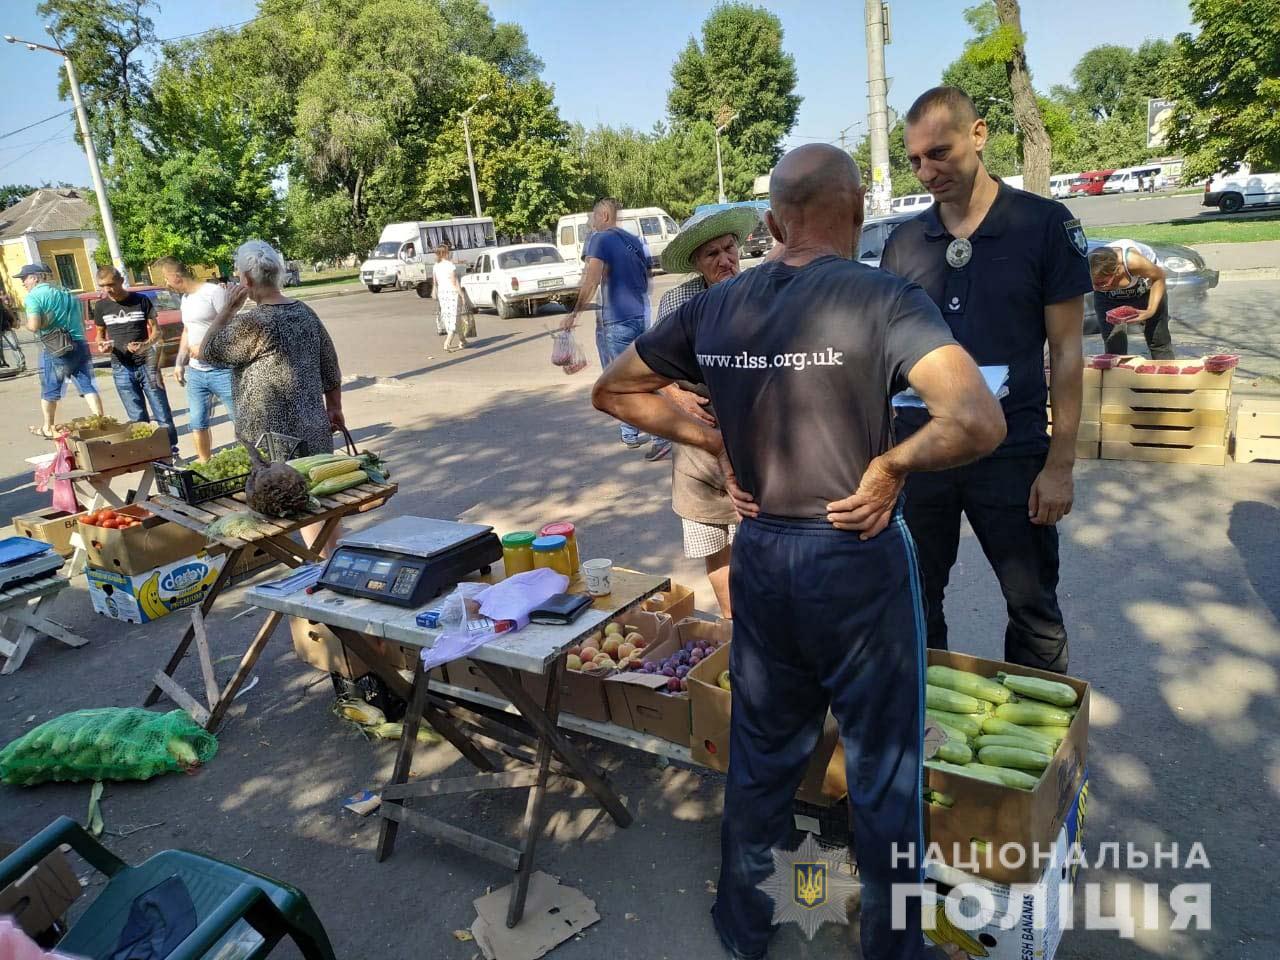 Продавцы овощей и фруктов расположились прямо на земле  возле оживленной автомобильной дороги